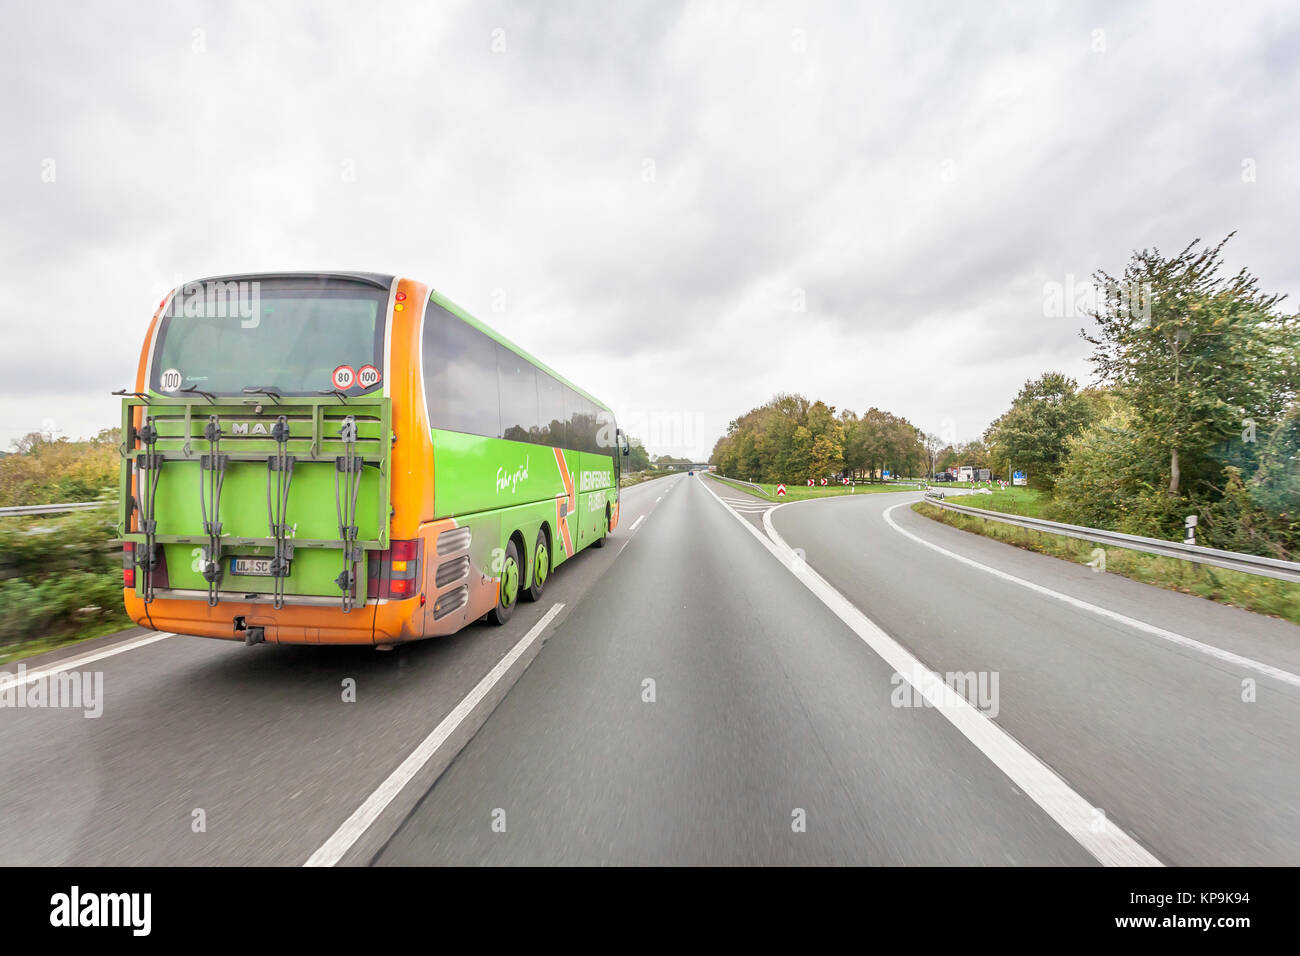 Unna, Alemania - 28 Oct, 2017: Verde Flixbus Meinfernbus europeo de larga distancia en autocar en la autopista en Alemania Foto de stock